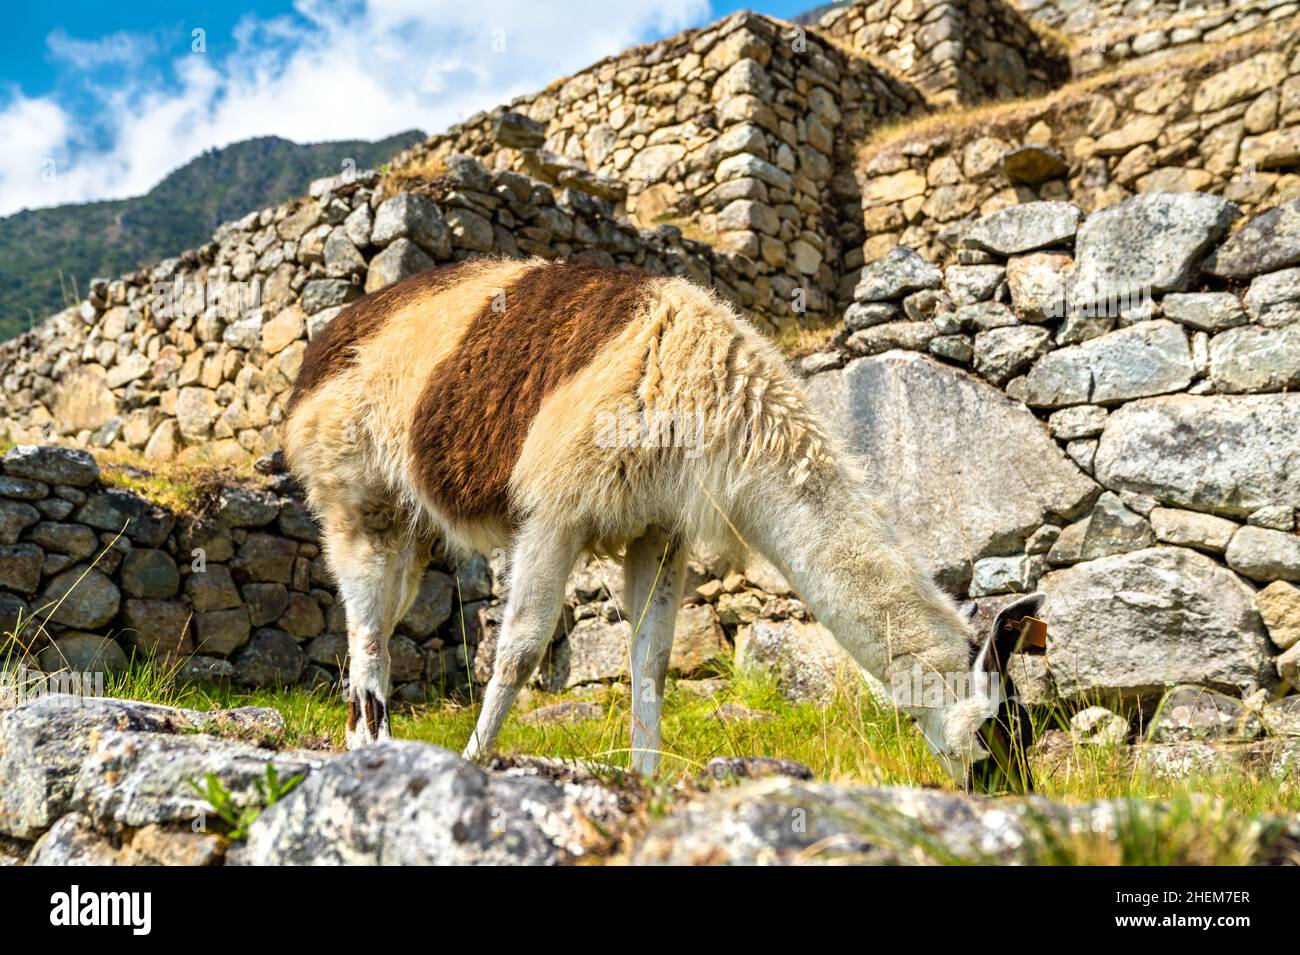 Llama at Machu Picchu in Peru Stock Photo